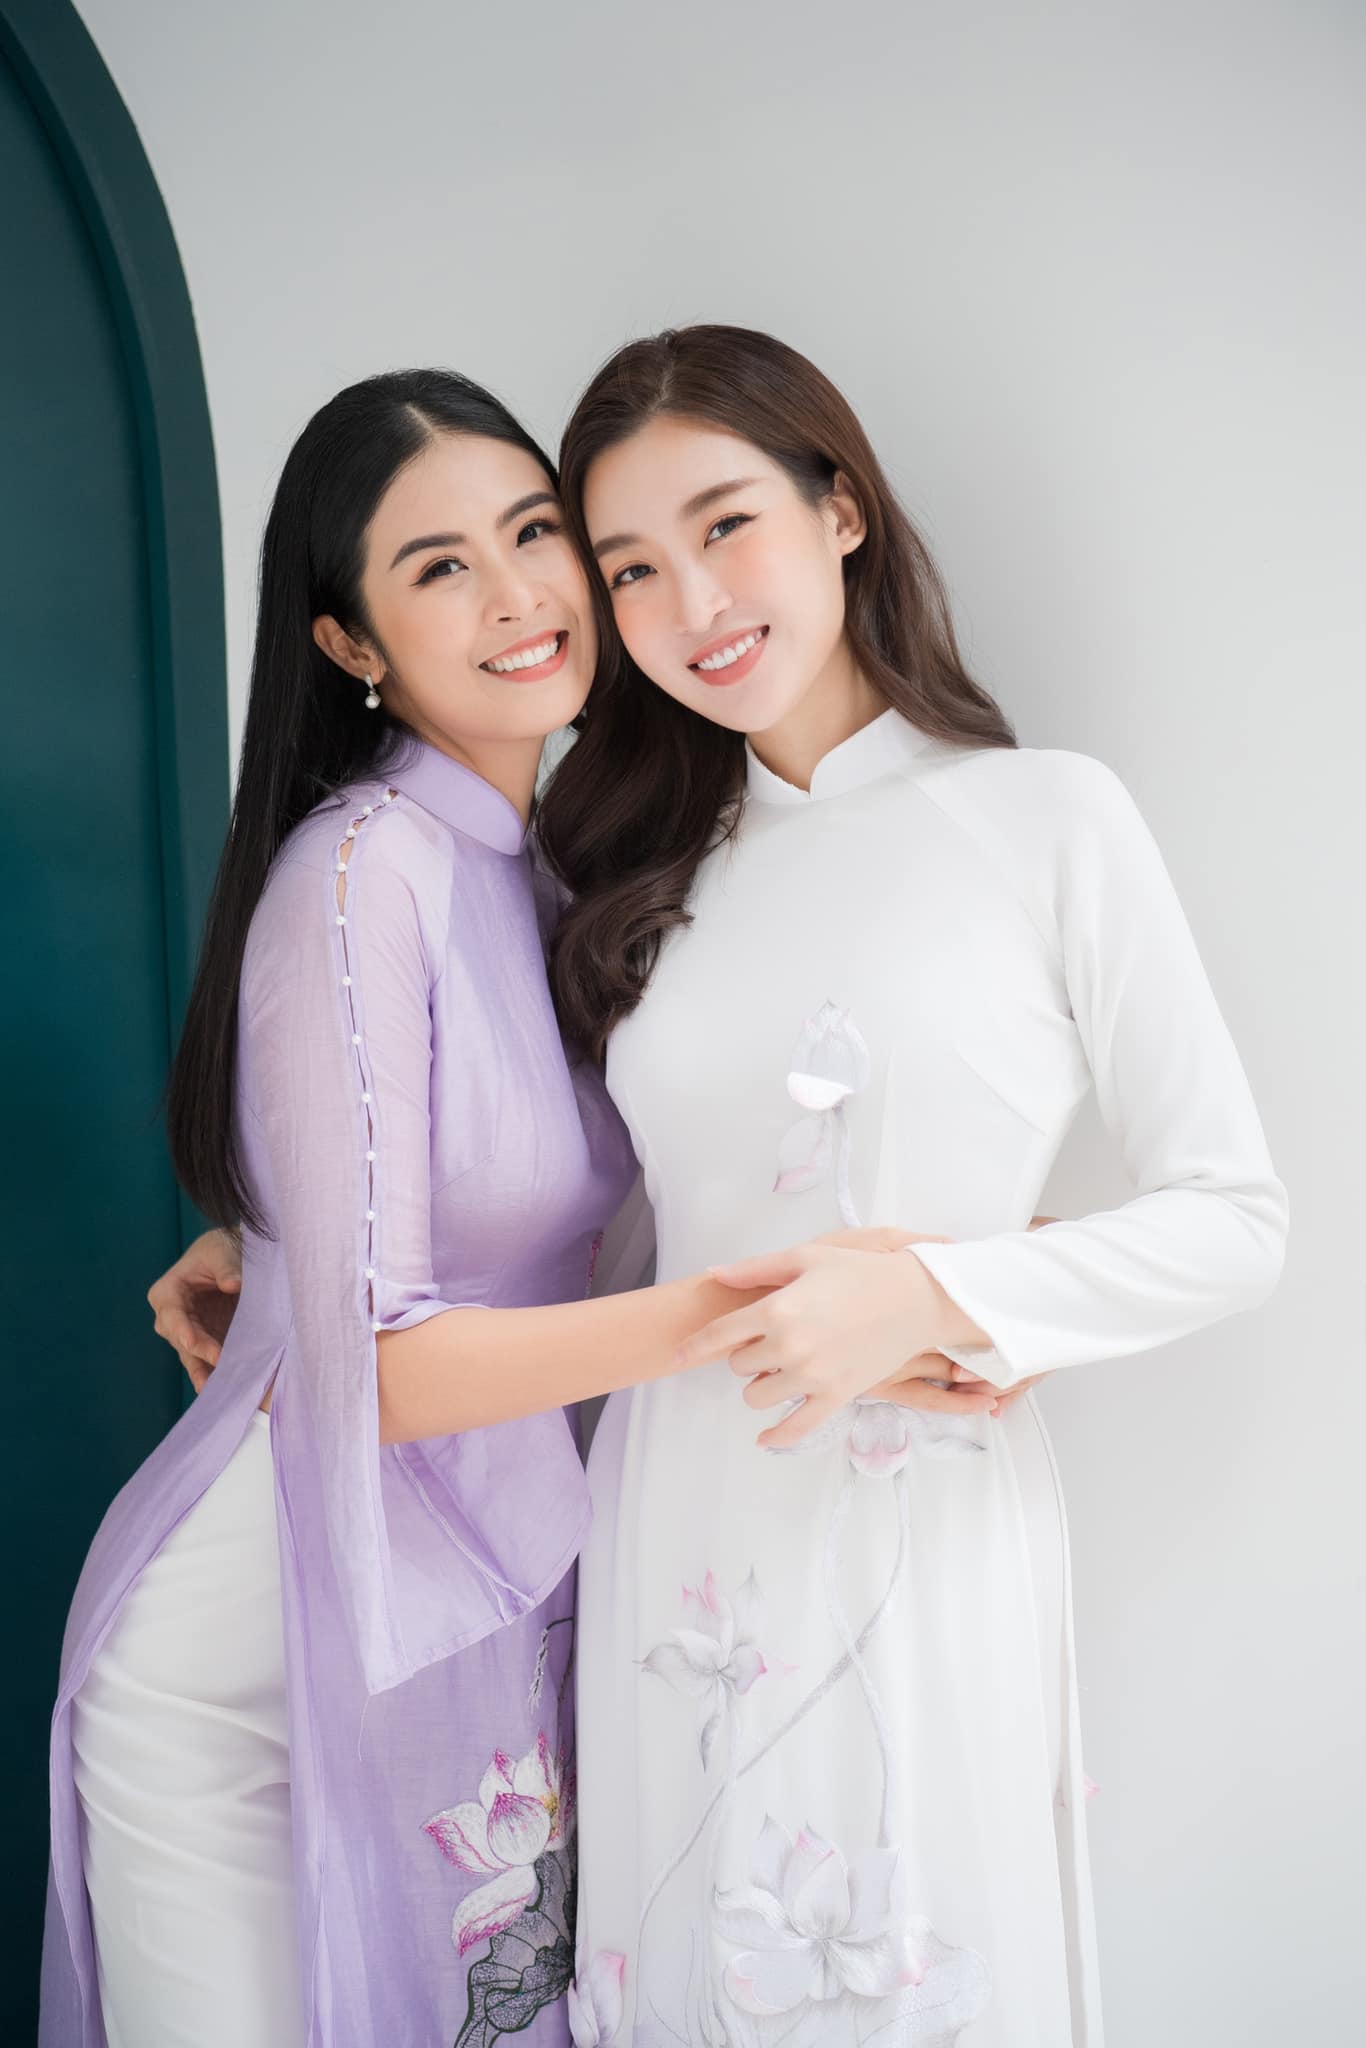 Đỗ Mỹ Linh đến buổi lễ khai trương cửa hàng áo dài mới của Hoa hậu Ngọc Hân. Hai người đẹp khoe sắc dịu dàng, đằm thắm với áo dài thướt tha.